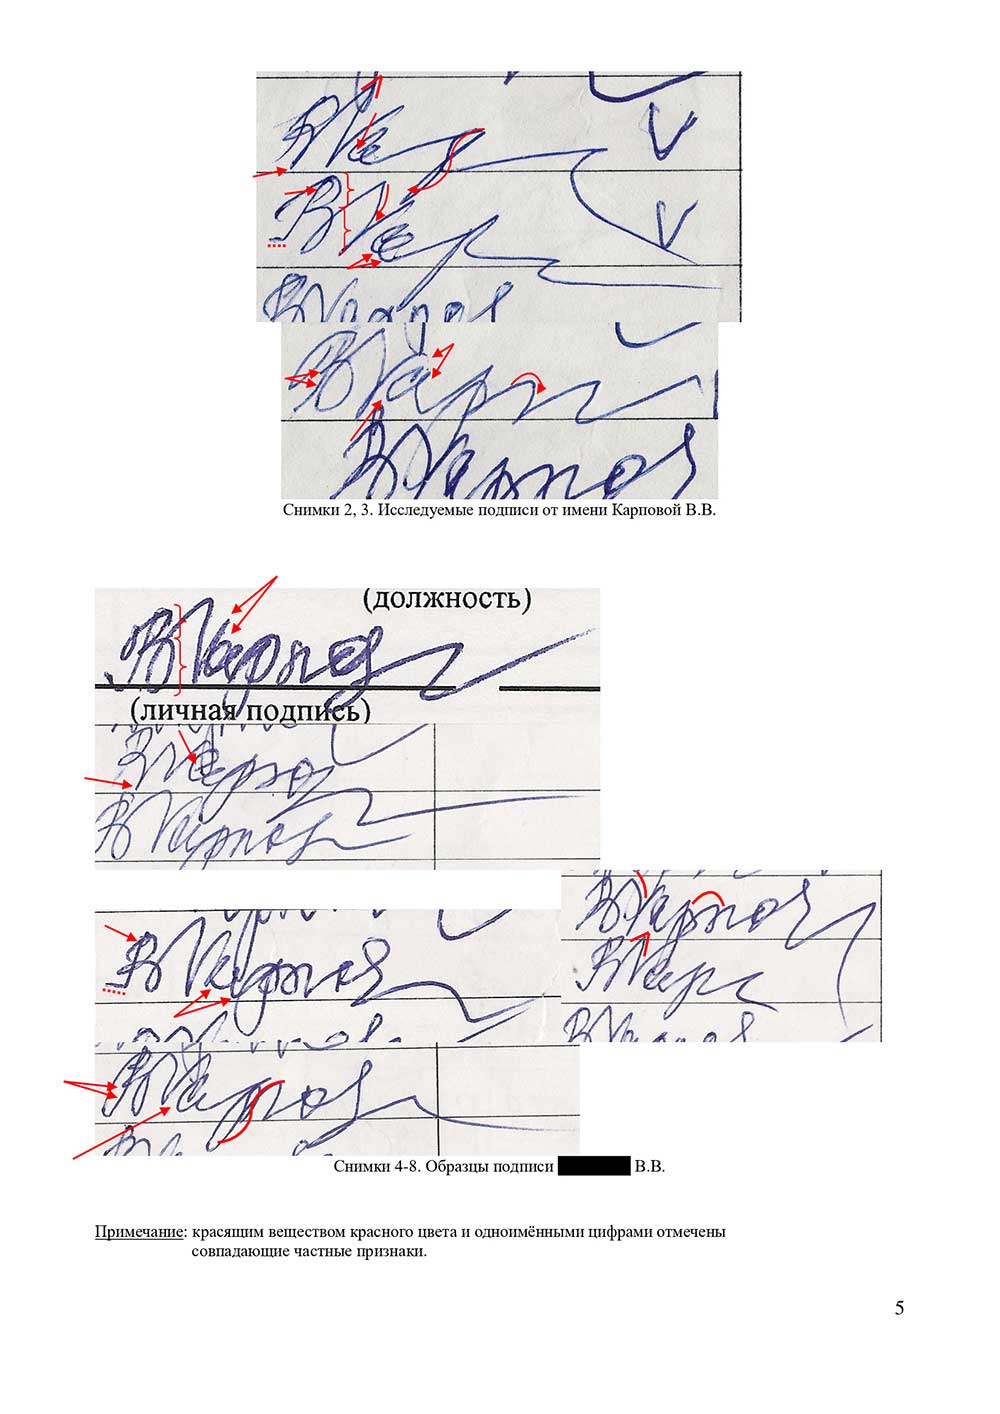 Судебная и досудебная почерковедческая экспертиза документов. Графологическая экспертиза почерка, подписи в Томске